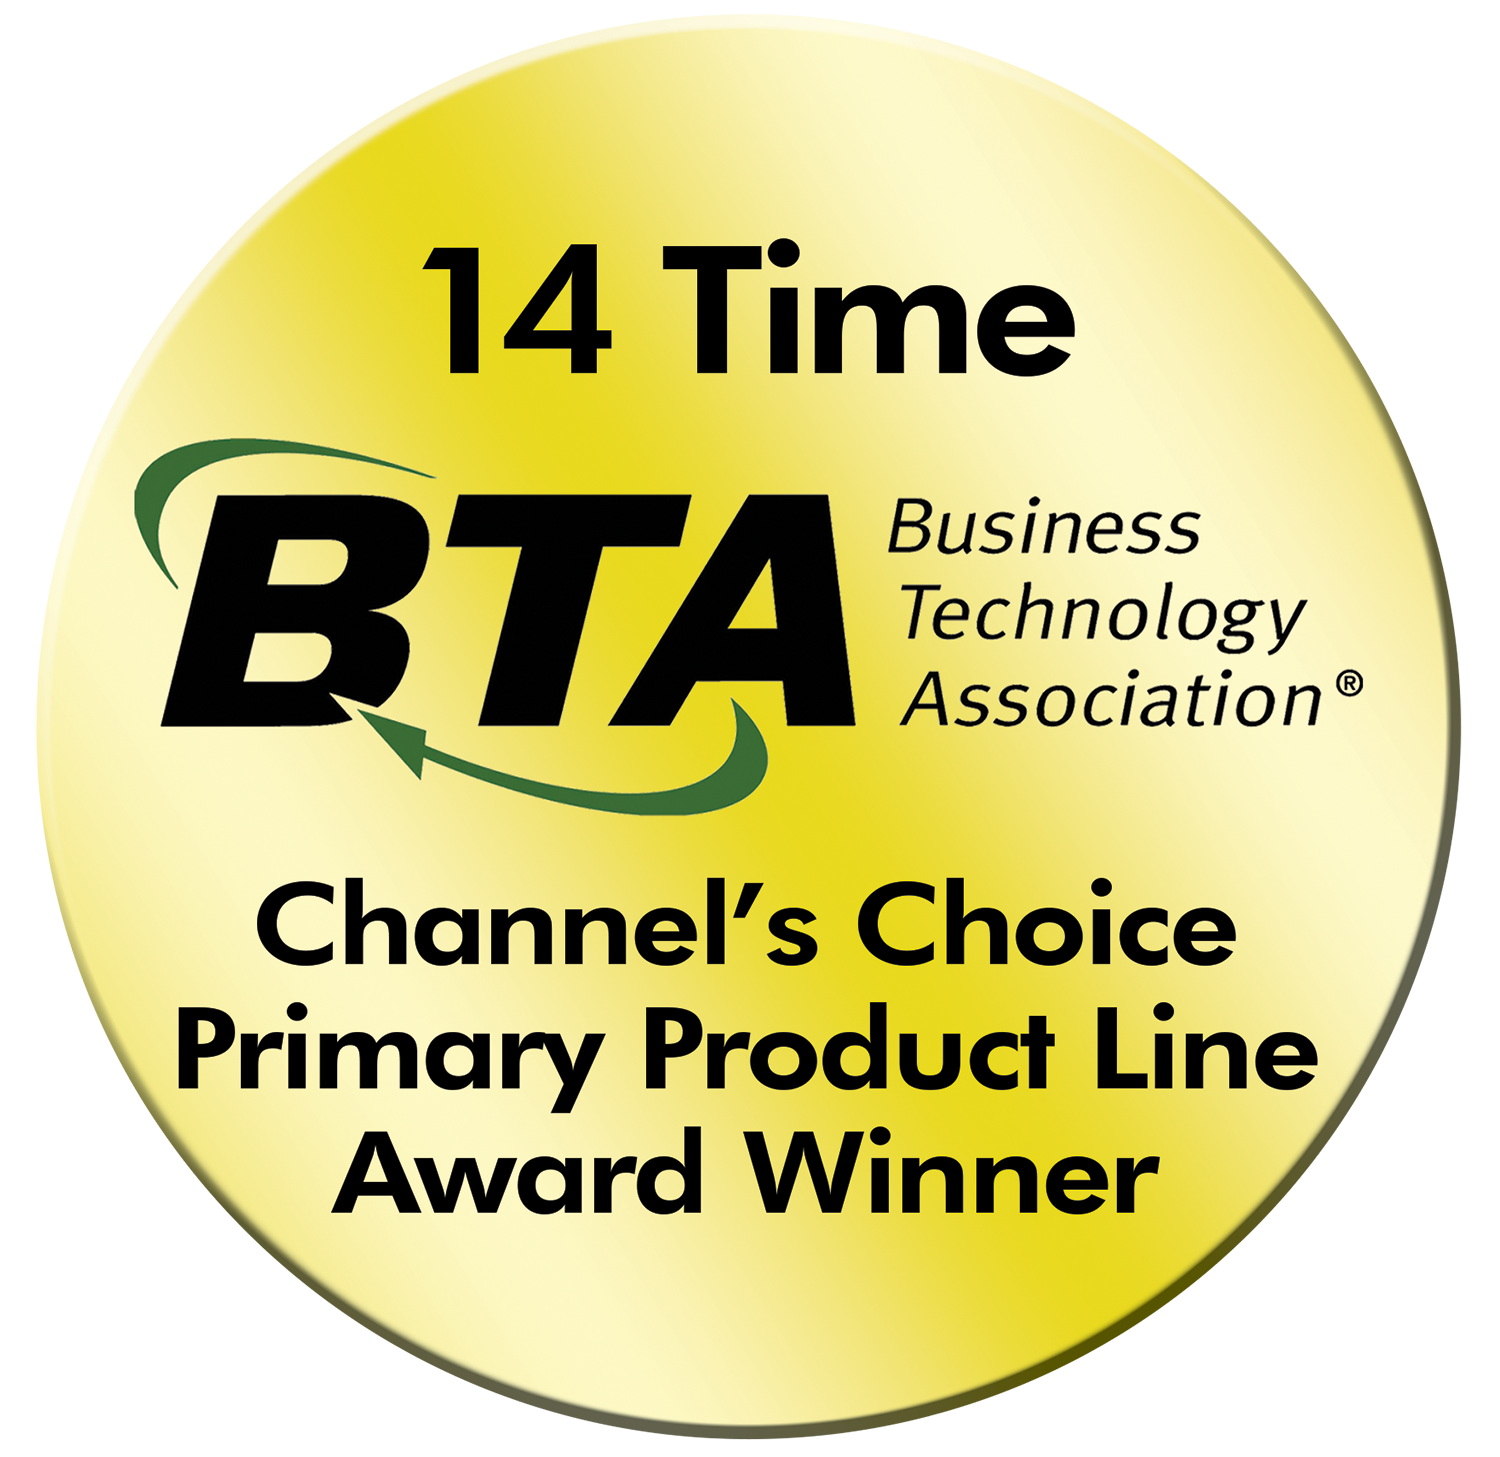 Business Technology Association (BTA): Channel’s Choice Award